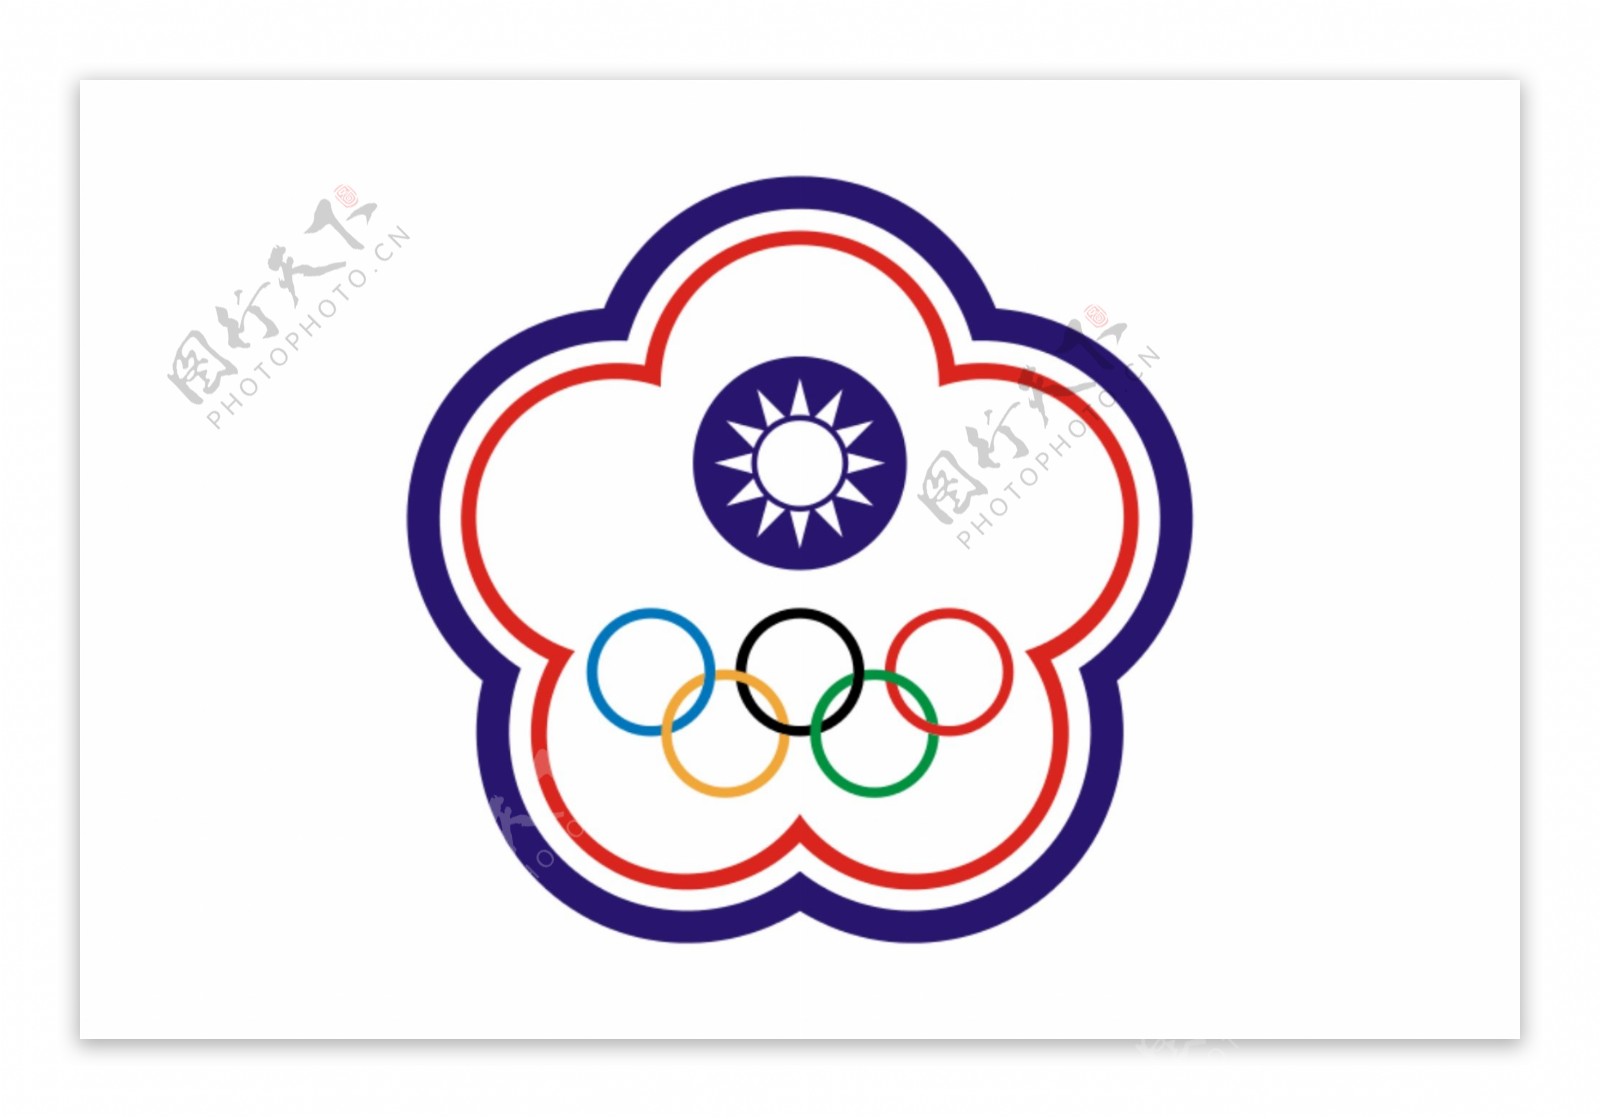 中华台北奥委会会旗